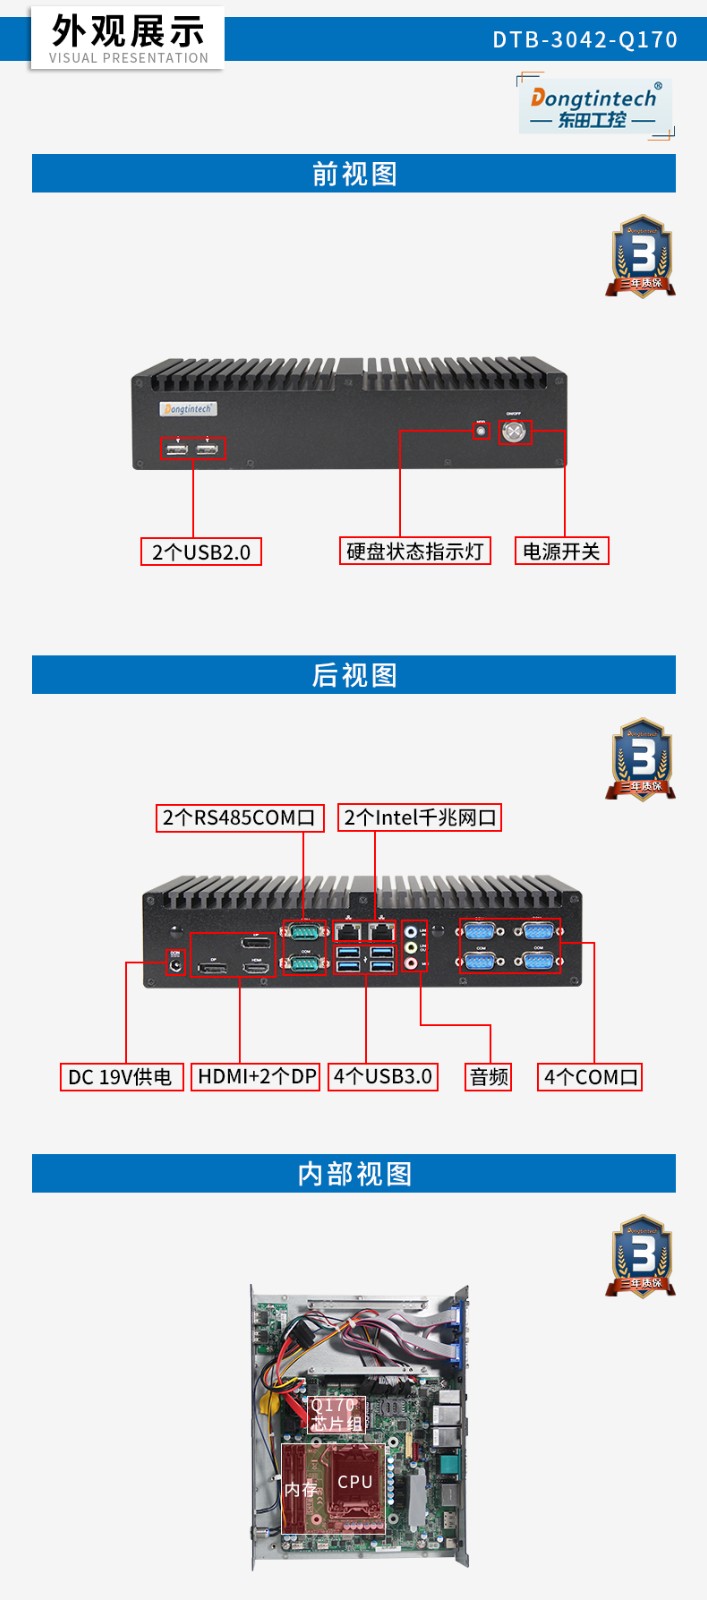 东田工控主机,嵌入式6串口6USB工业电脑,DTB-3042-Q170.jpg